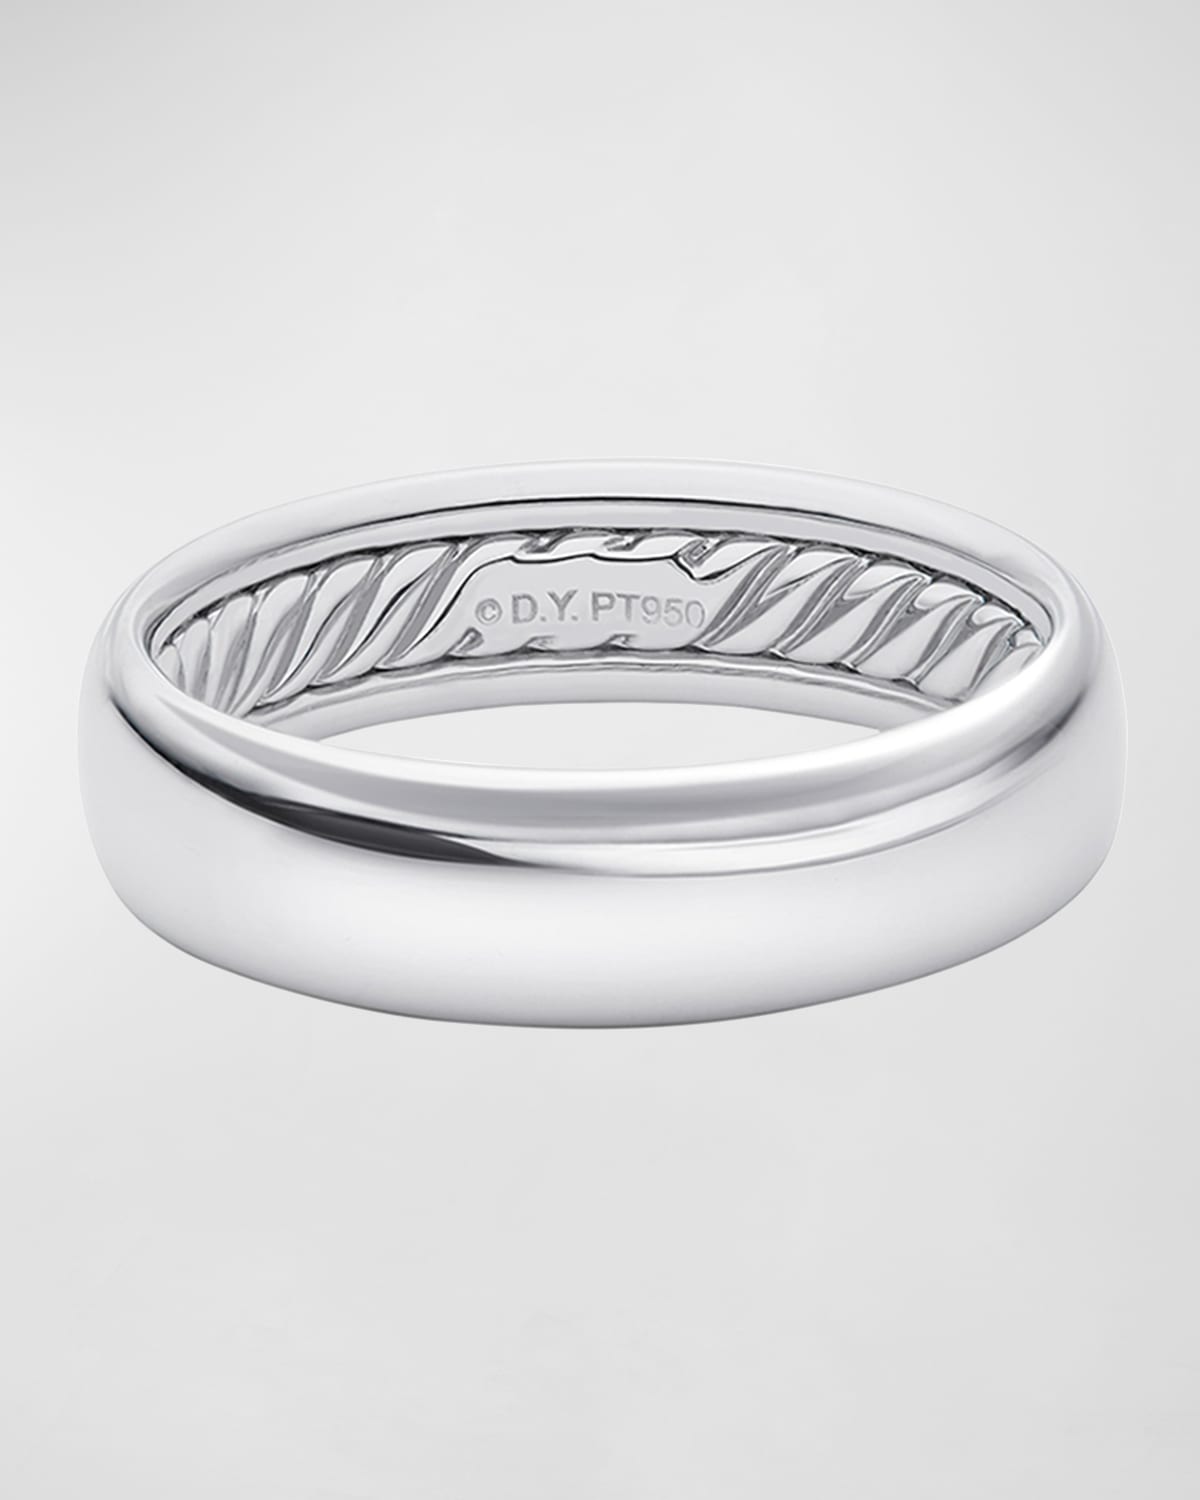 3.5mm Black/White Enamel Stainless Steel Band Womens 18K Rose Gold Ring Size 5-8